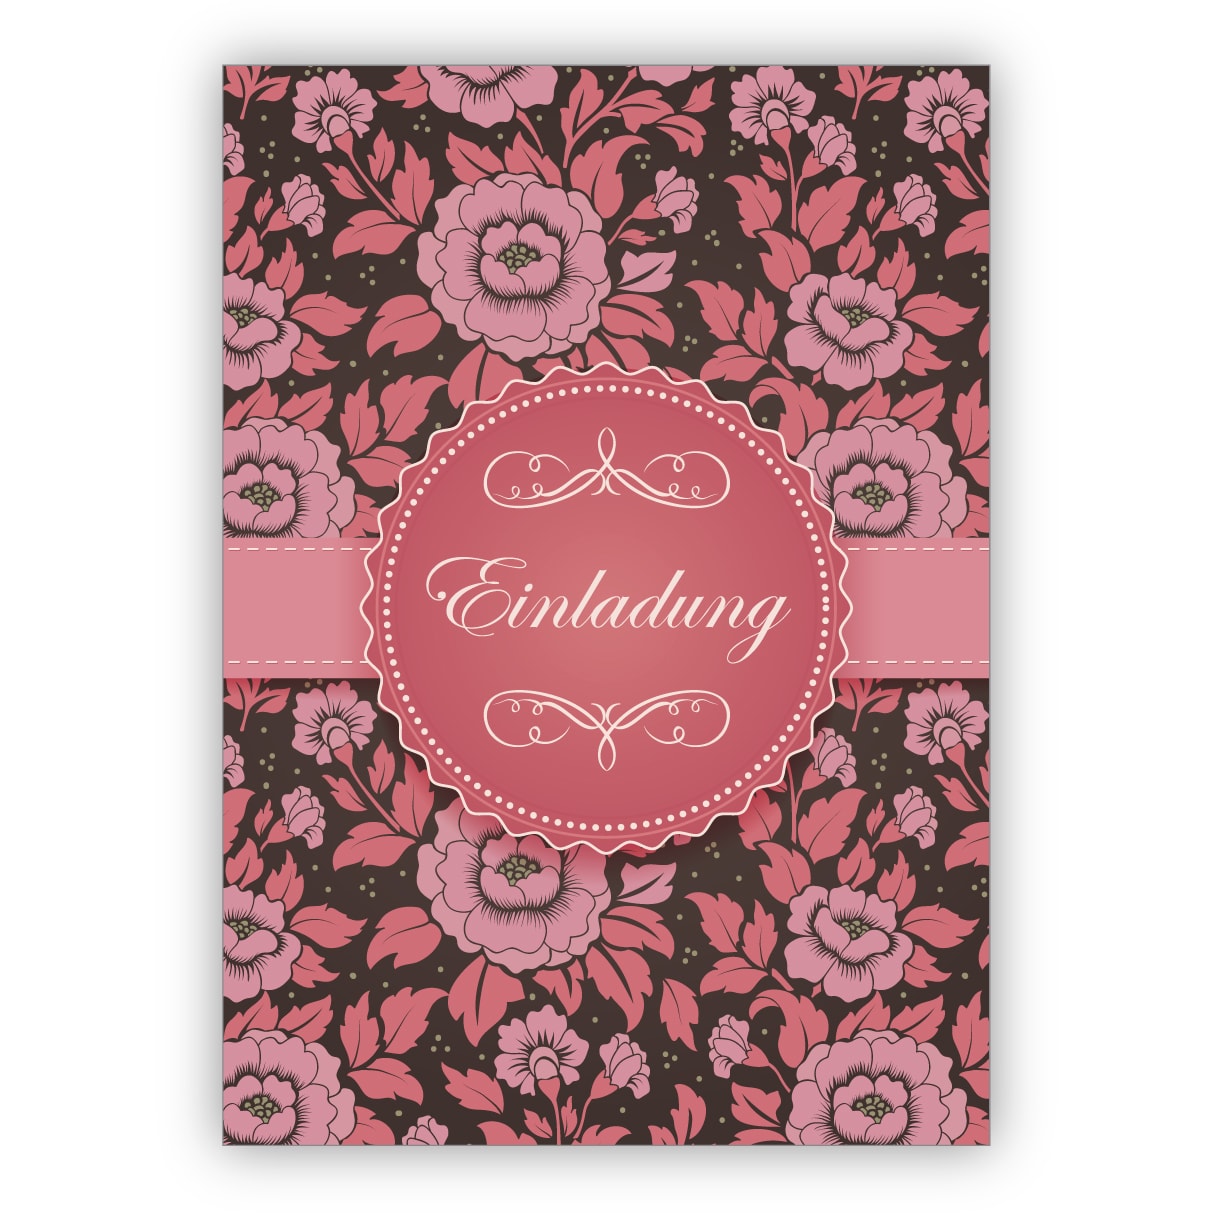 Feierliche rosa Einladungskarte zur Hochzeit, Taufe, Geburtstag, Firmung auf feinem Rosen Muster: Einladung